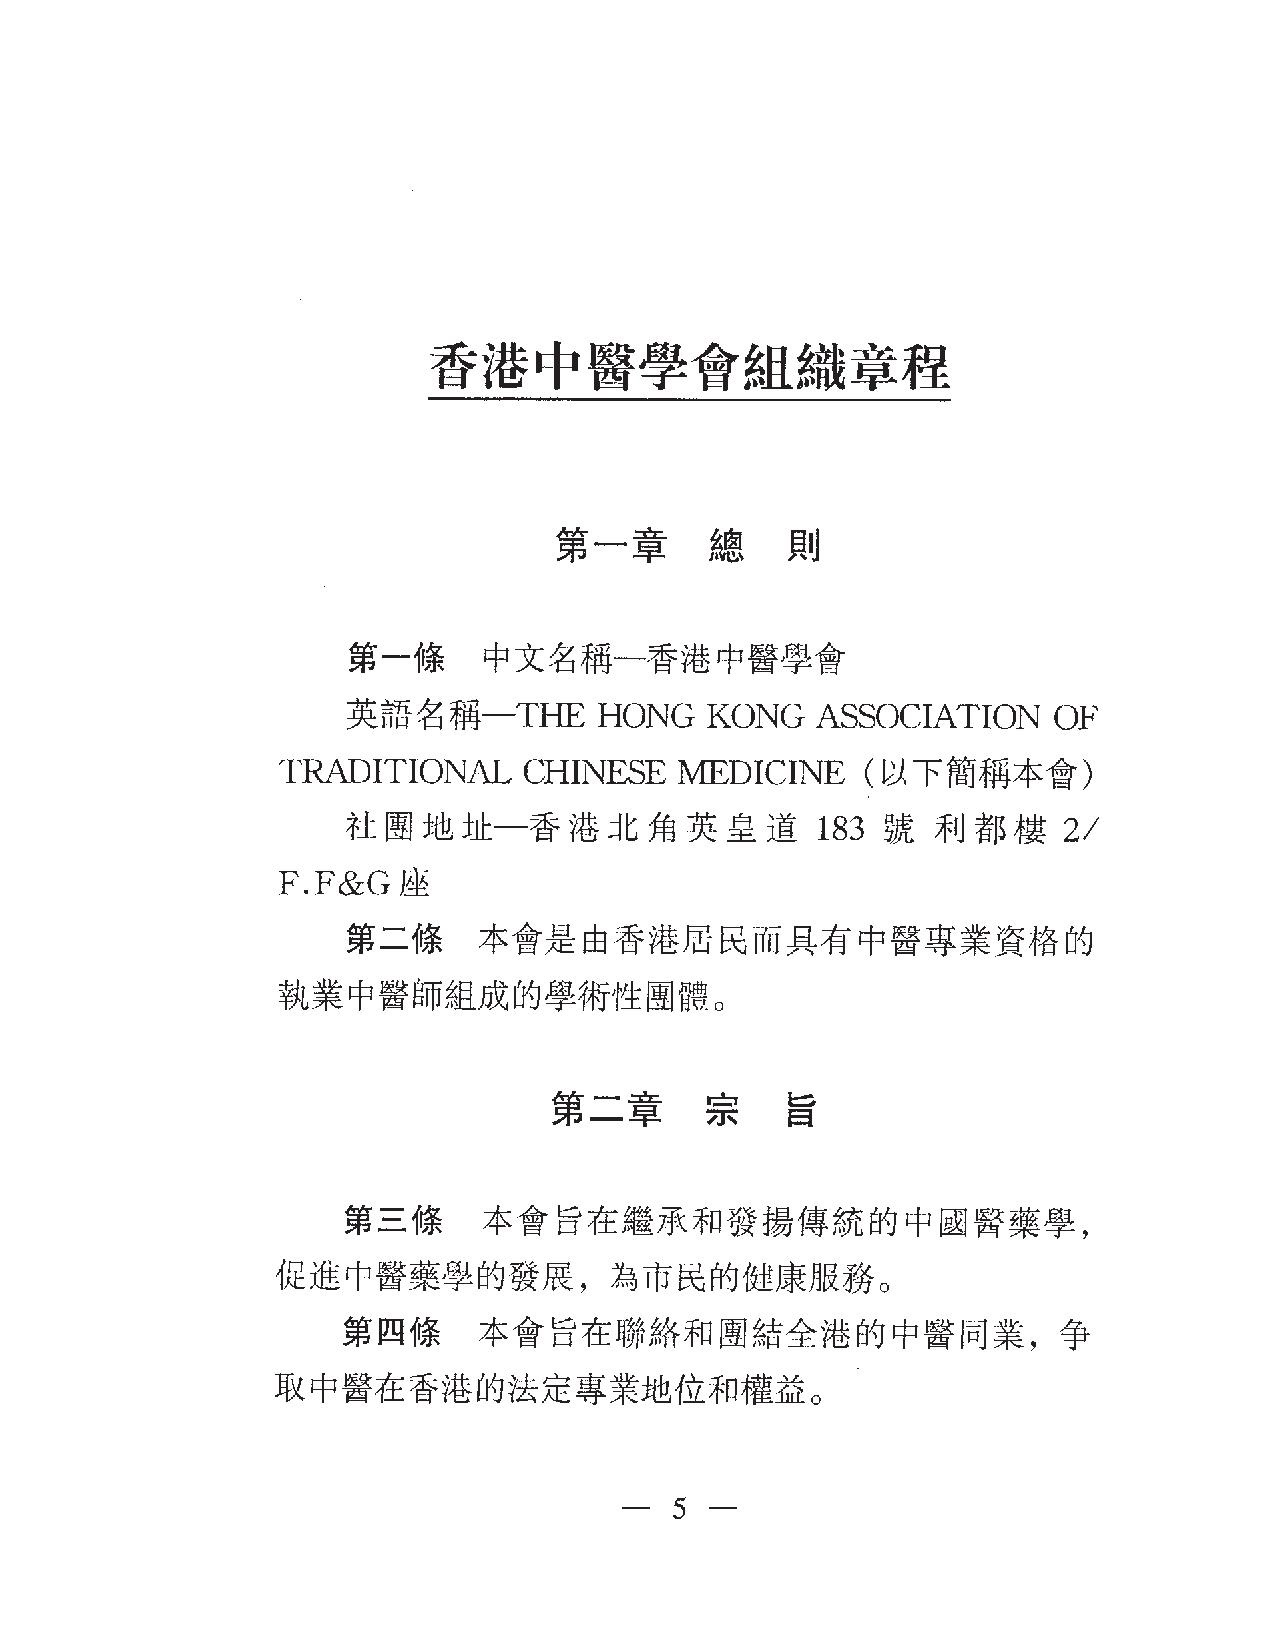 香港中醫學會組織章程06